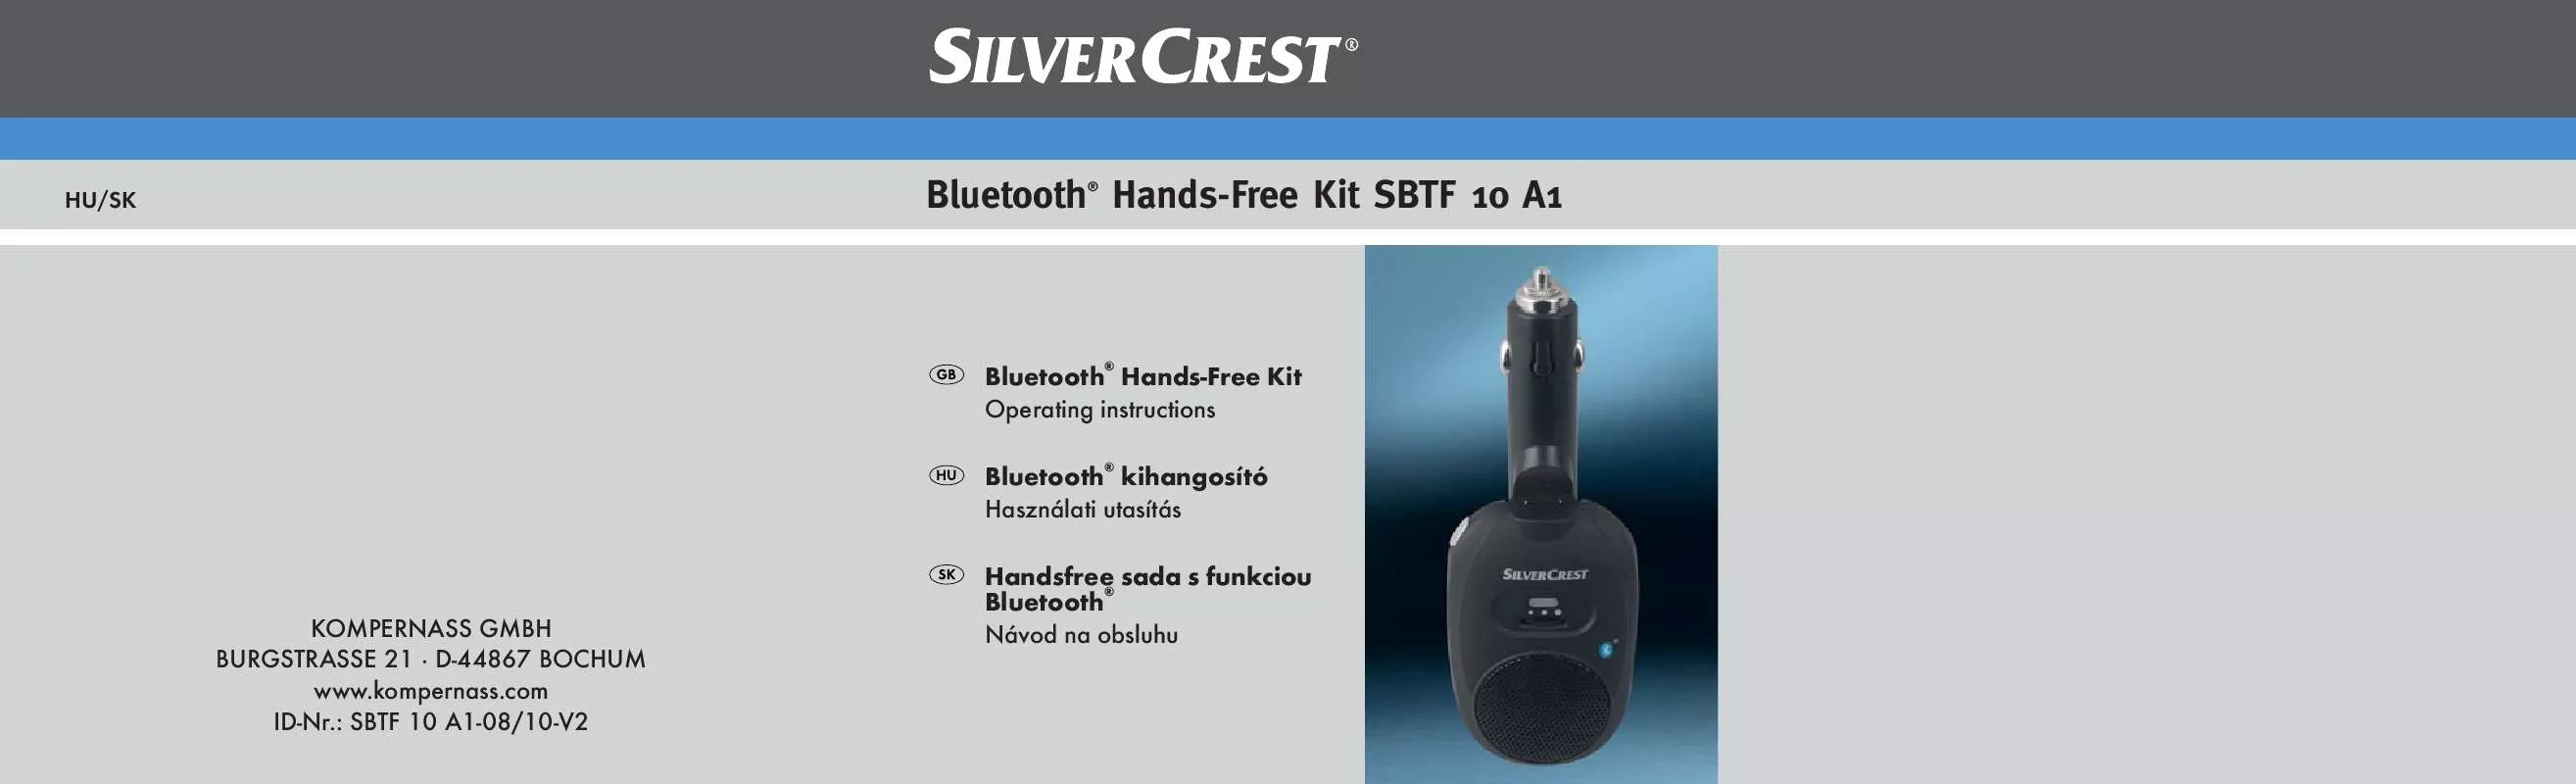 Mode d'emploi SILVERCREST SBTF 10 A1 BLUETOOTH HANDS-FREE KIT